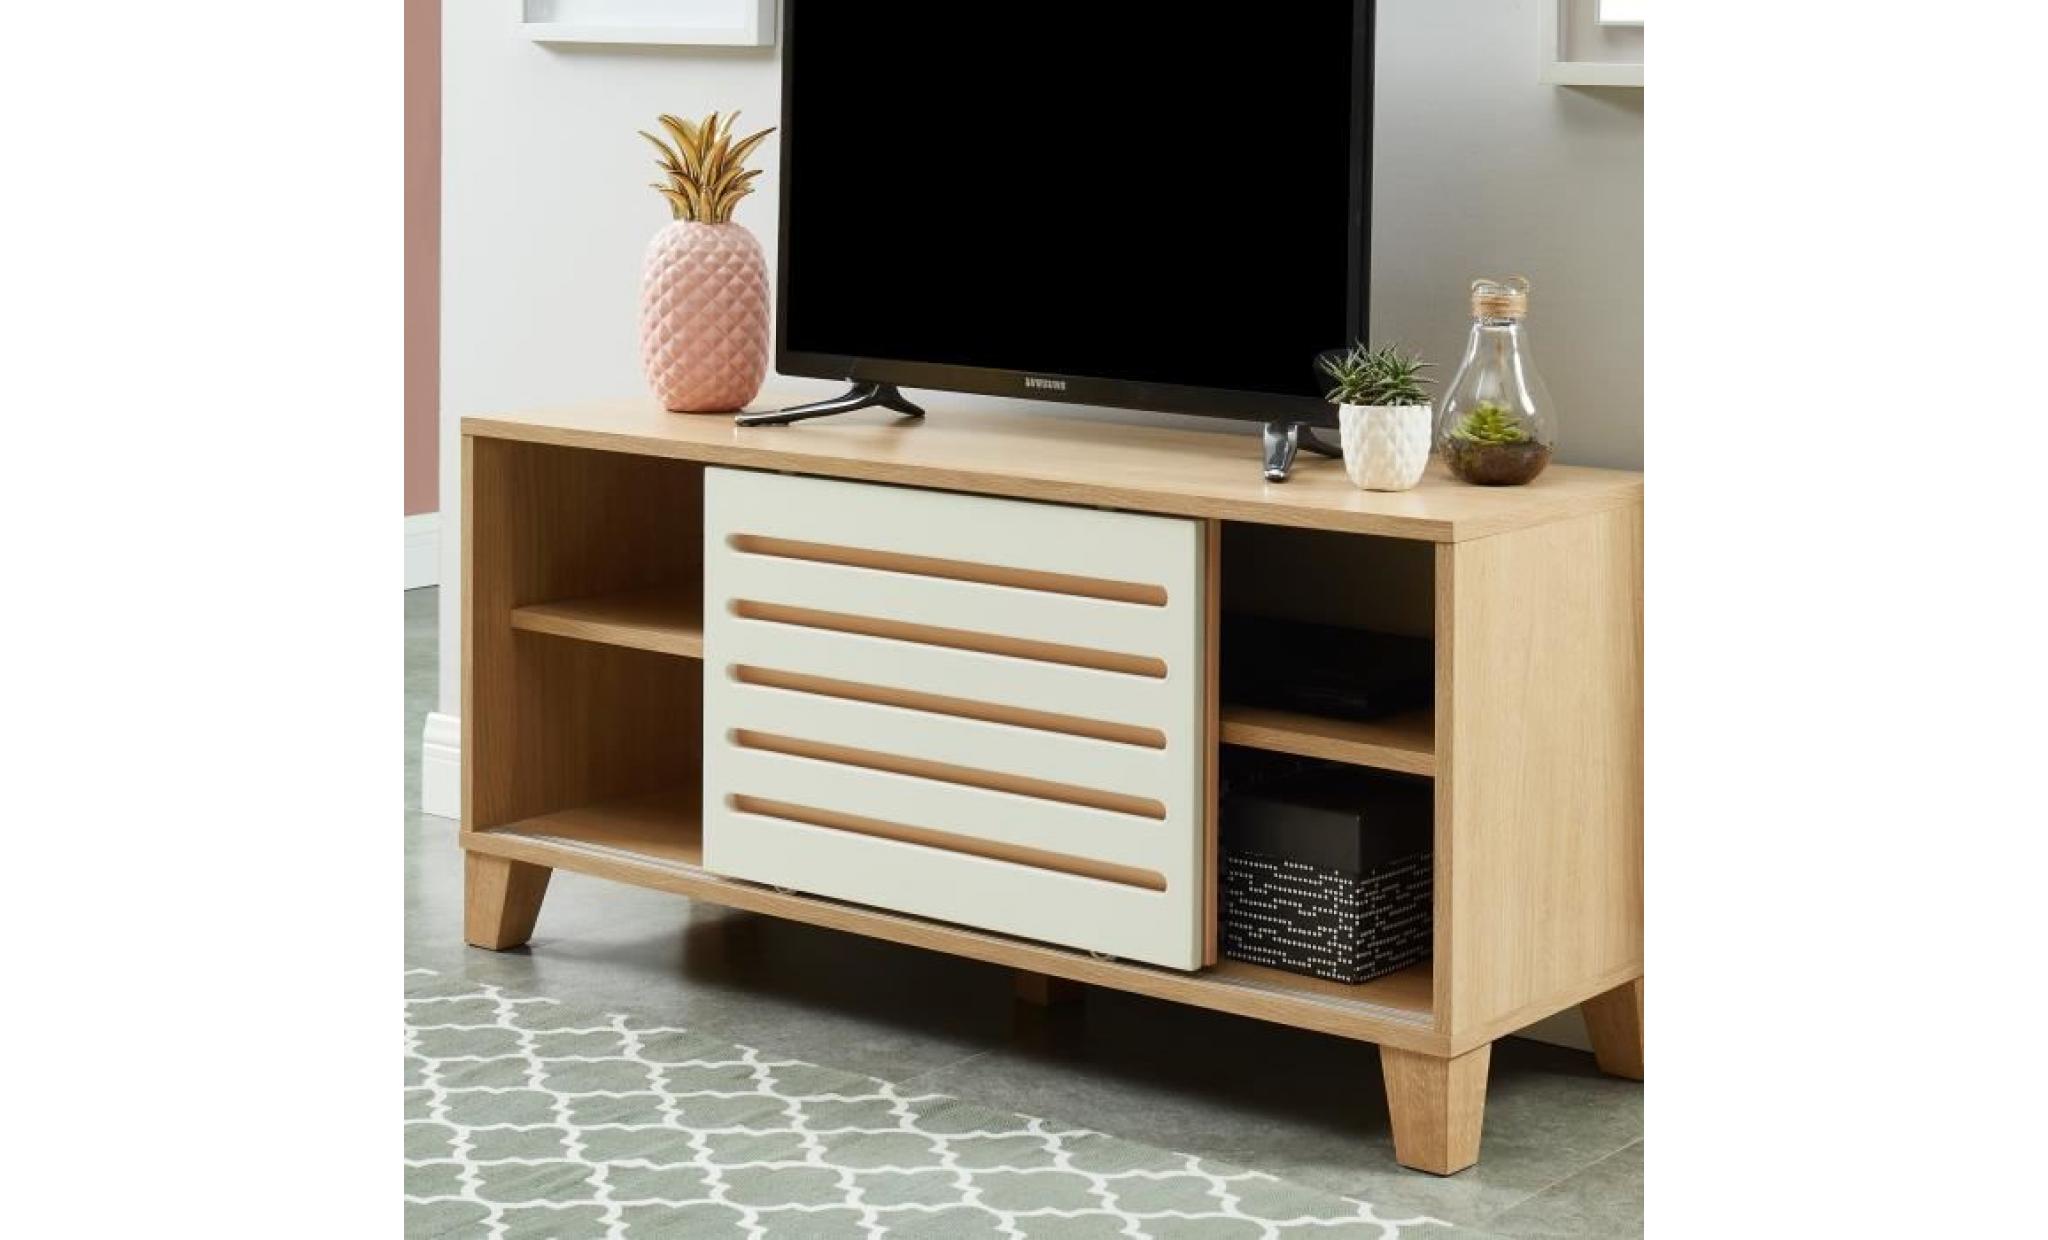 openwork meuble tv scandinave décor chêne, blanc et vert   l 120 cm pas cher